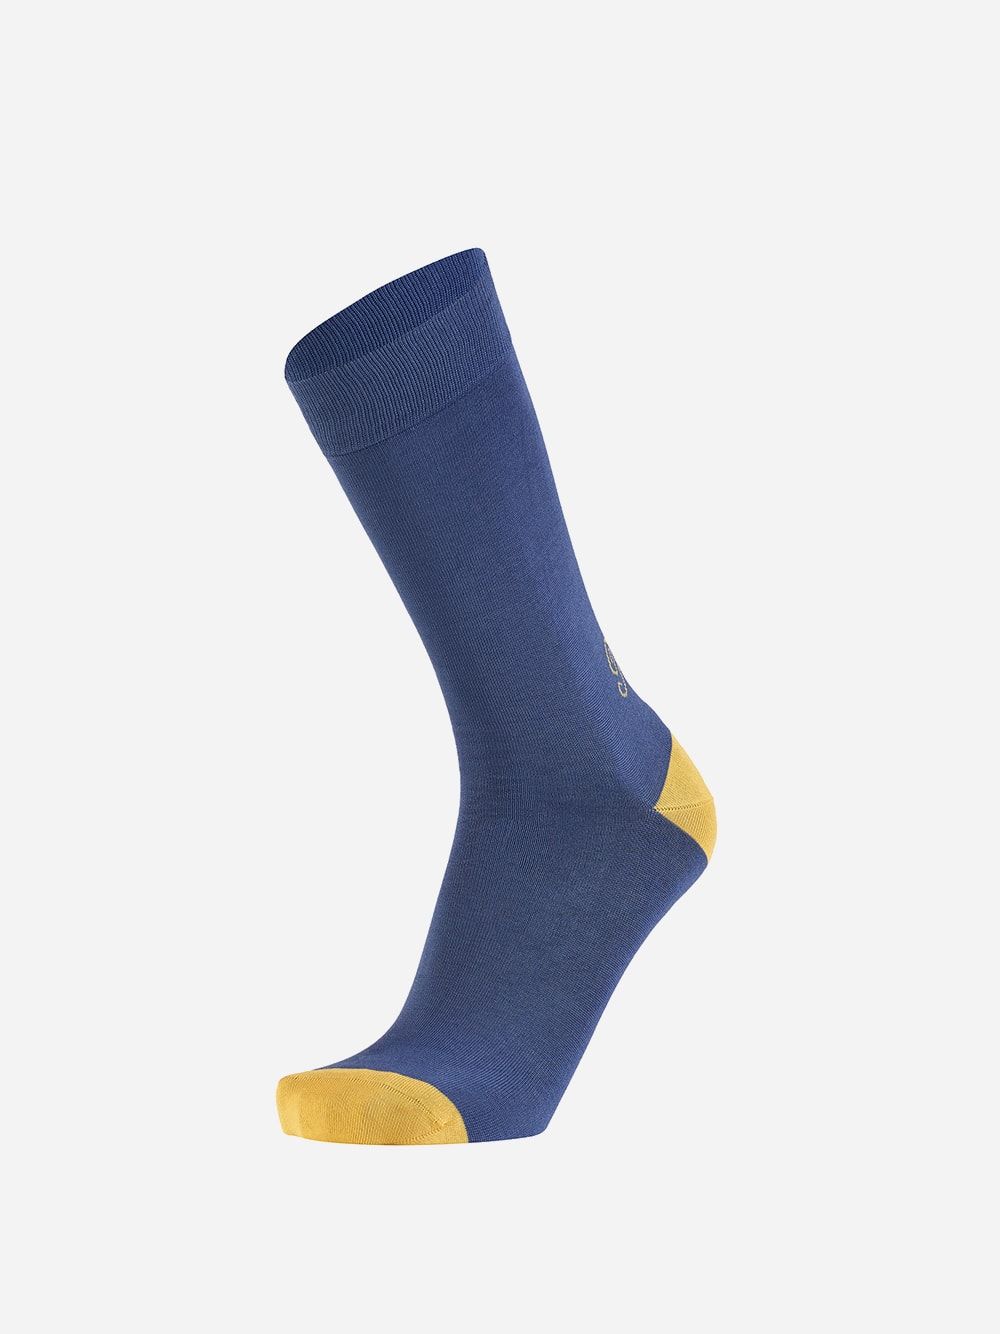 Blue Socks King | Westmister